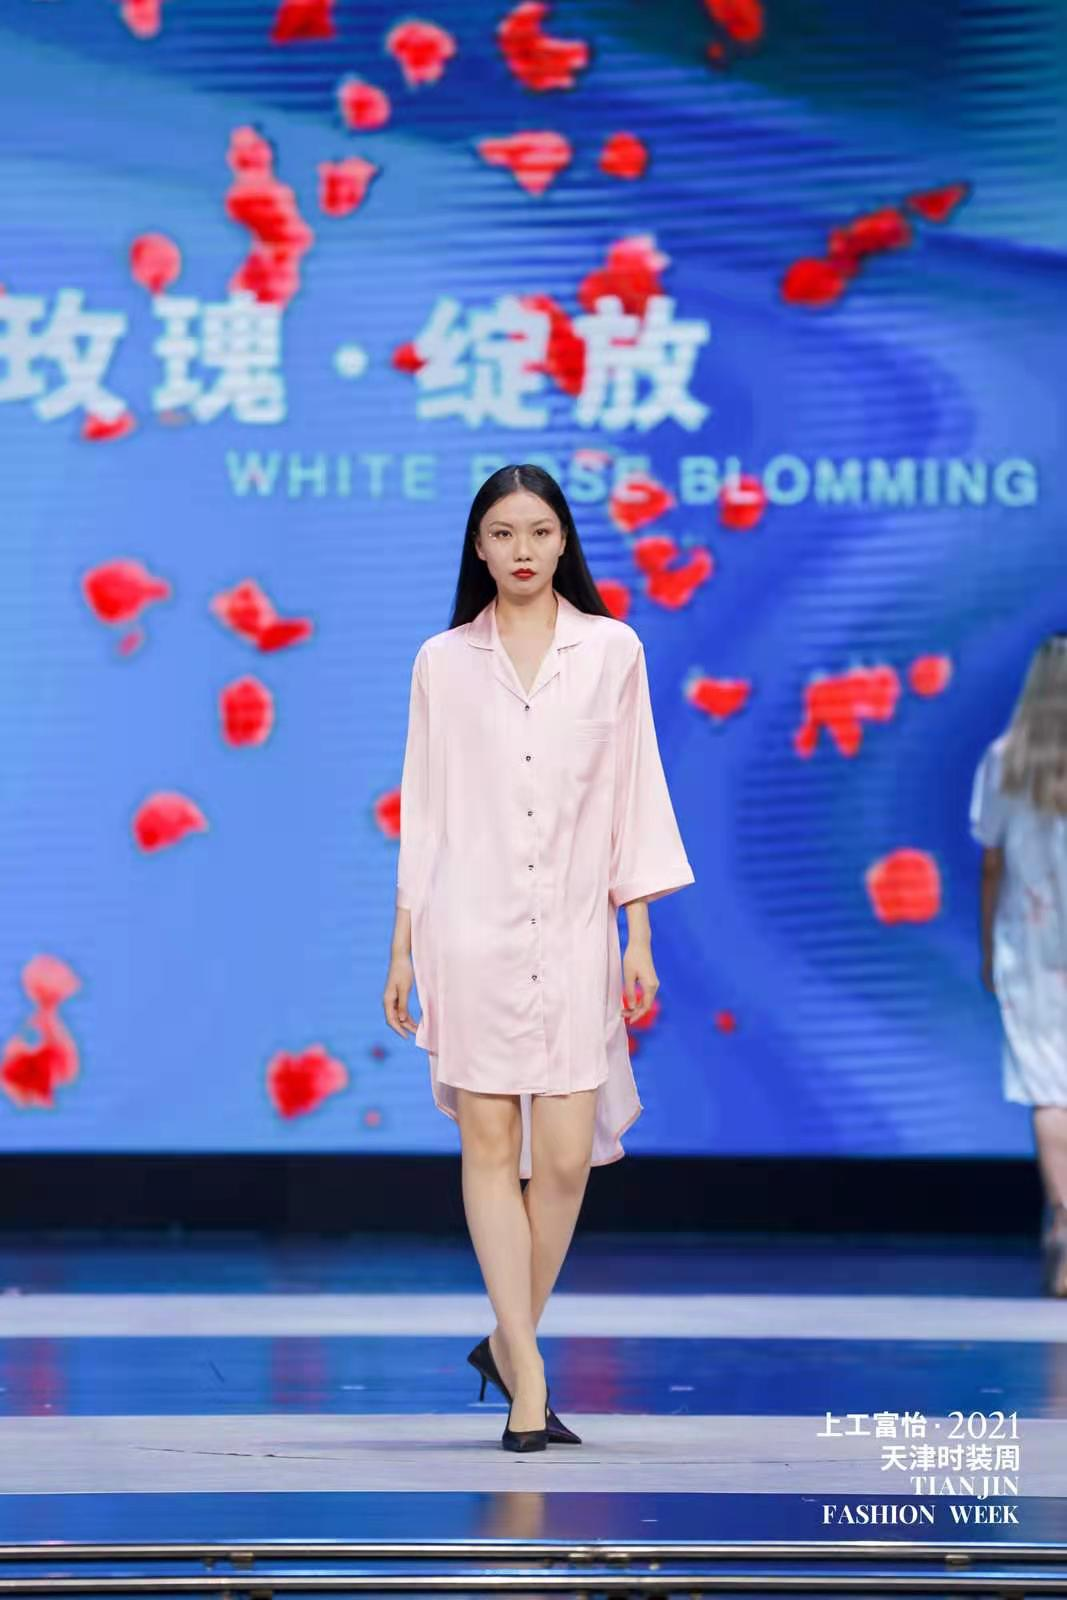 百年风华 时尚焕新——上工富怡·2021天津时装周焕新而来